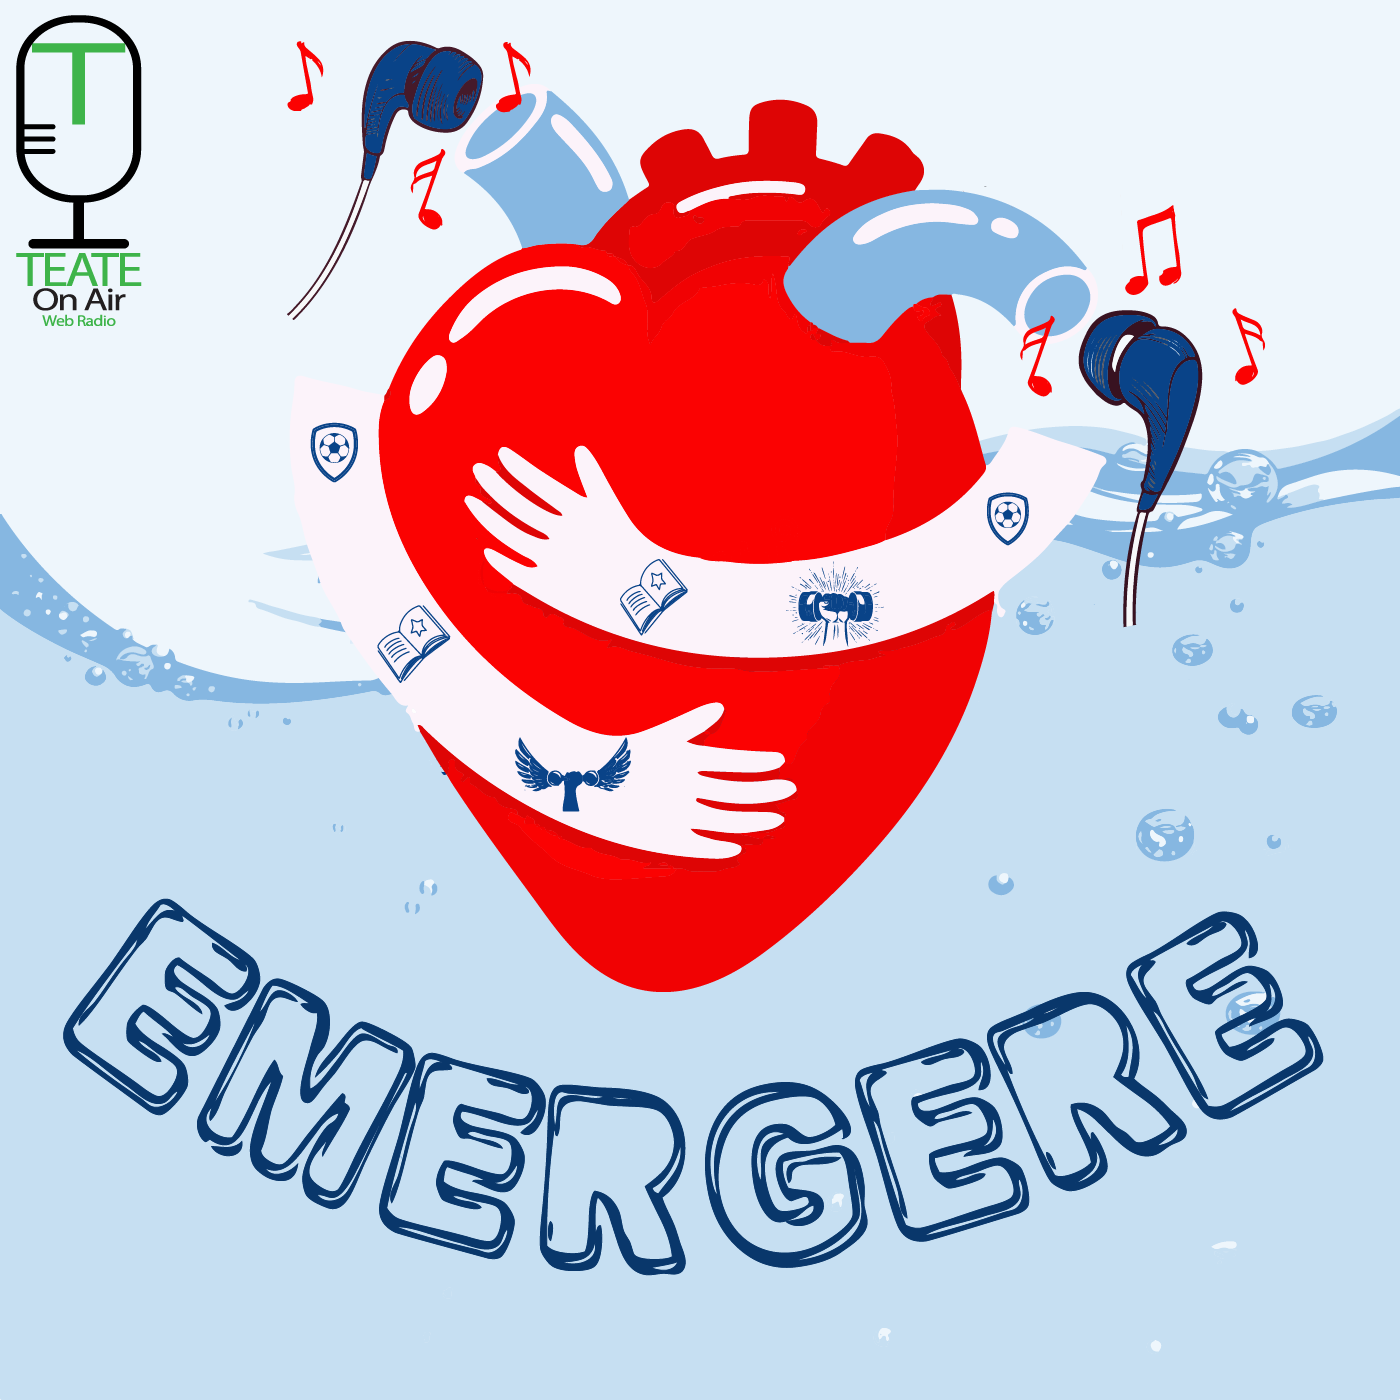 Copertina di "Emergere" + Logo ToA